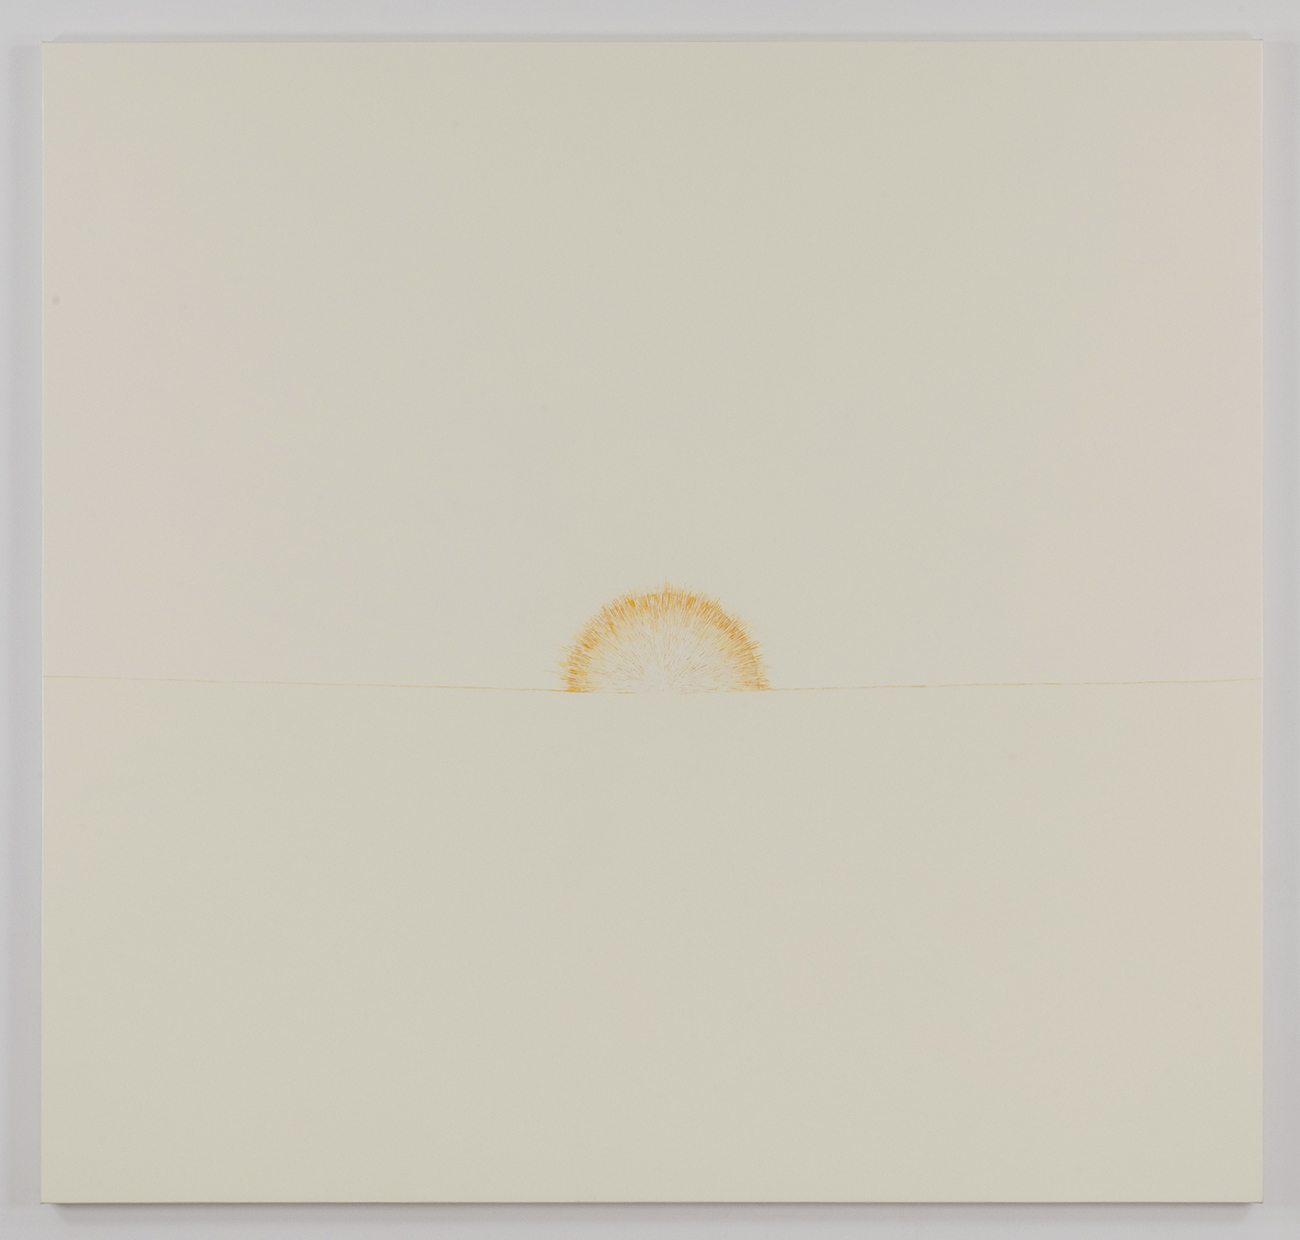 The rising sun 2008-11(02)｜oil on canvas｜190 x 200 cm｜2008